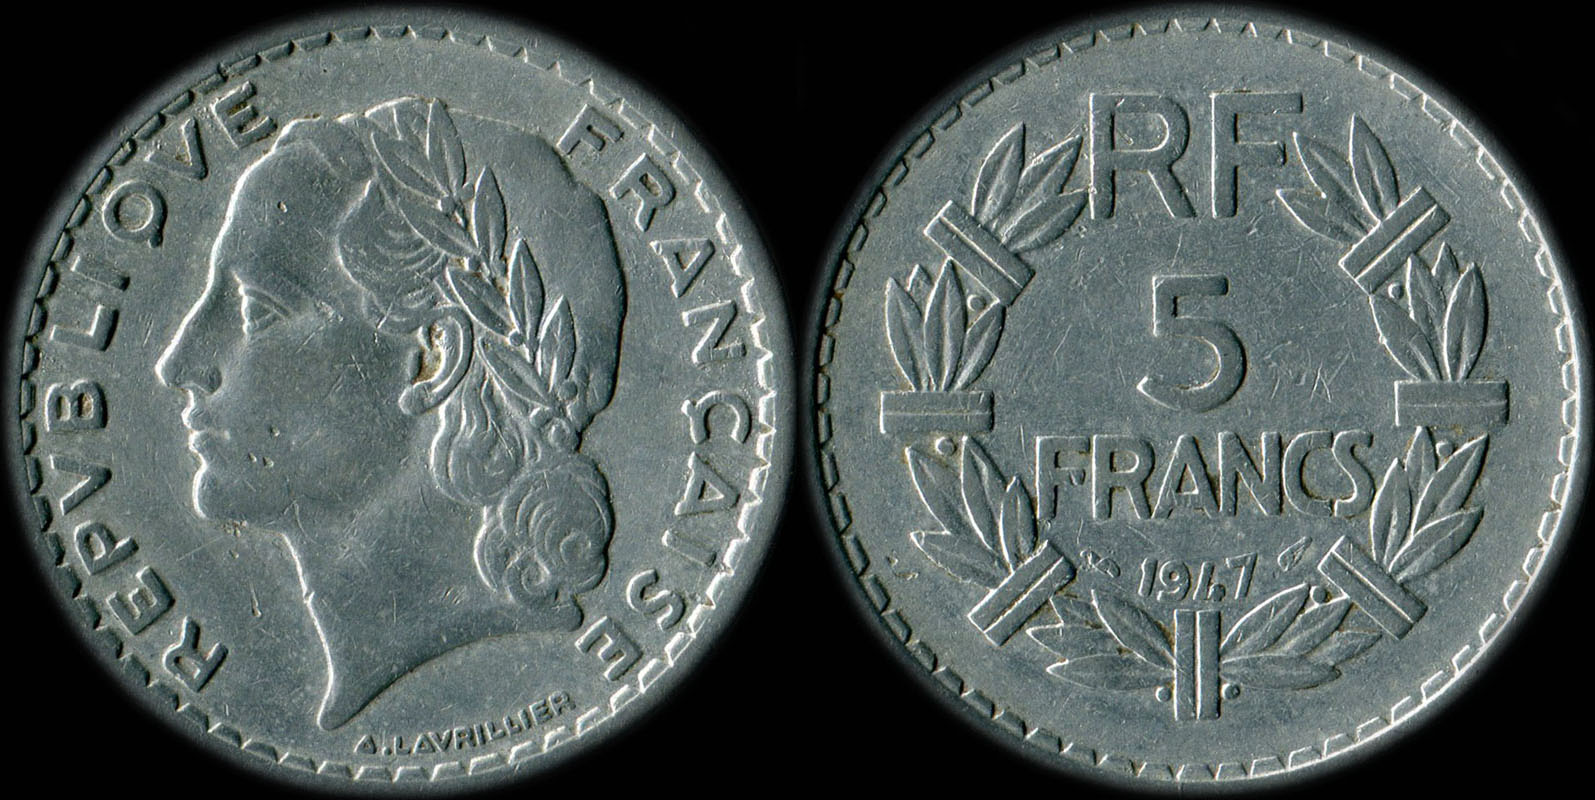 Pice de 5 francs Lavrillier 1947 aluminium avec 9 ferm